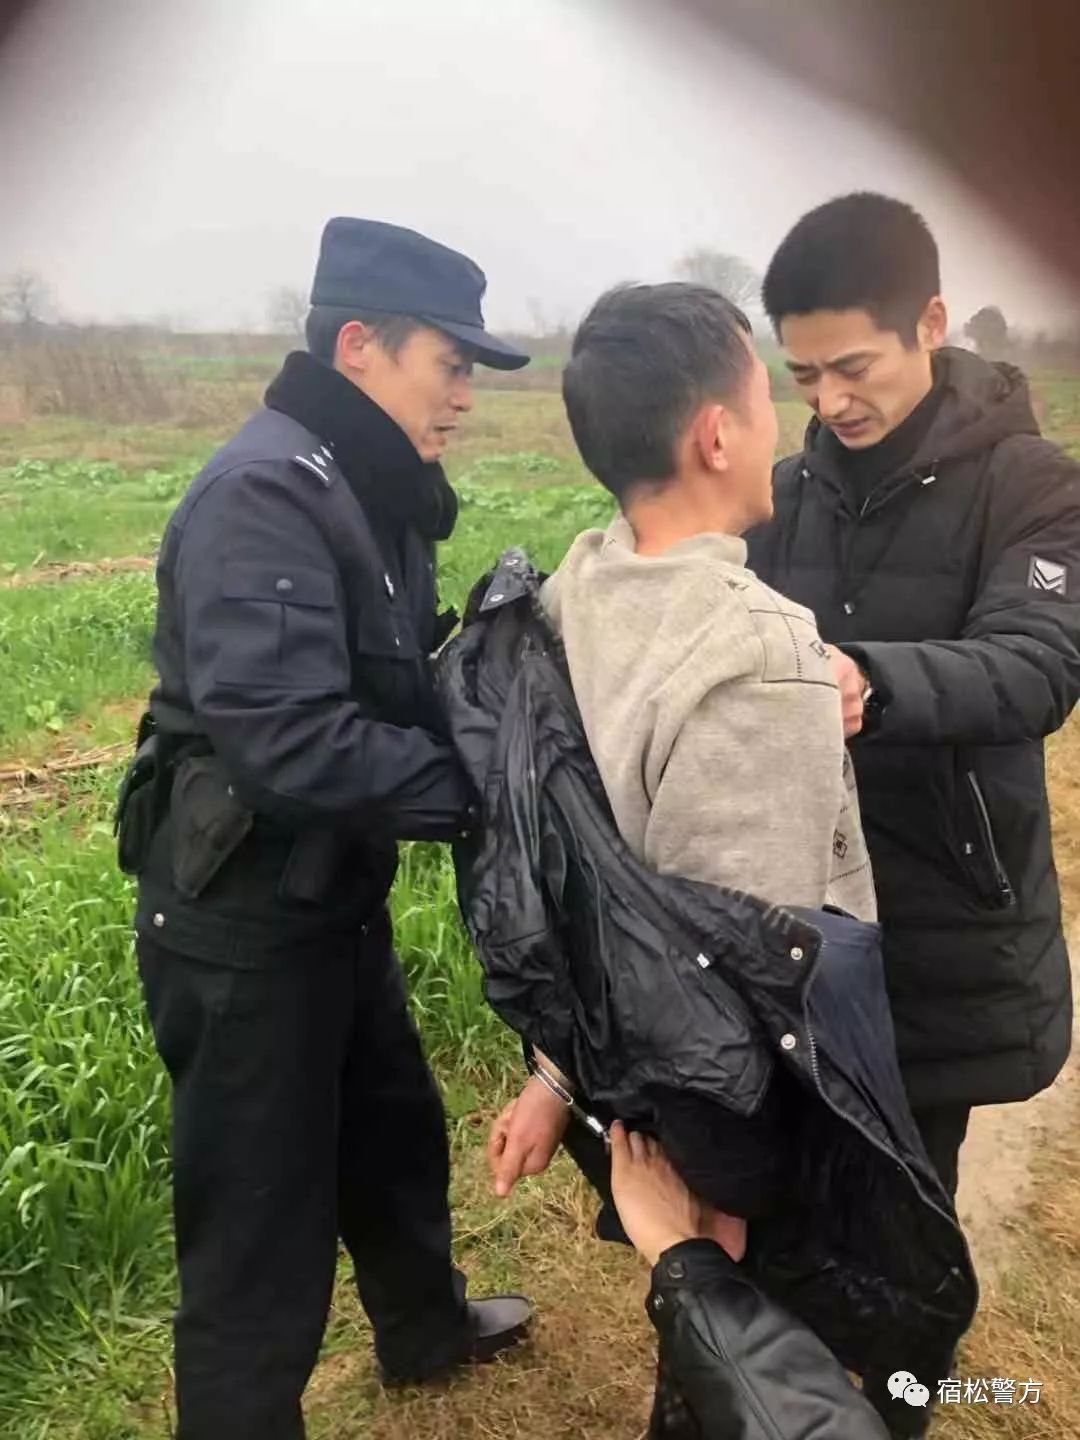 800关注最新2月19日重大刑事案件的犯罪嫌疑人刘迭文被公安机关抓获了